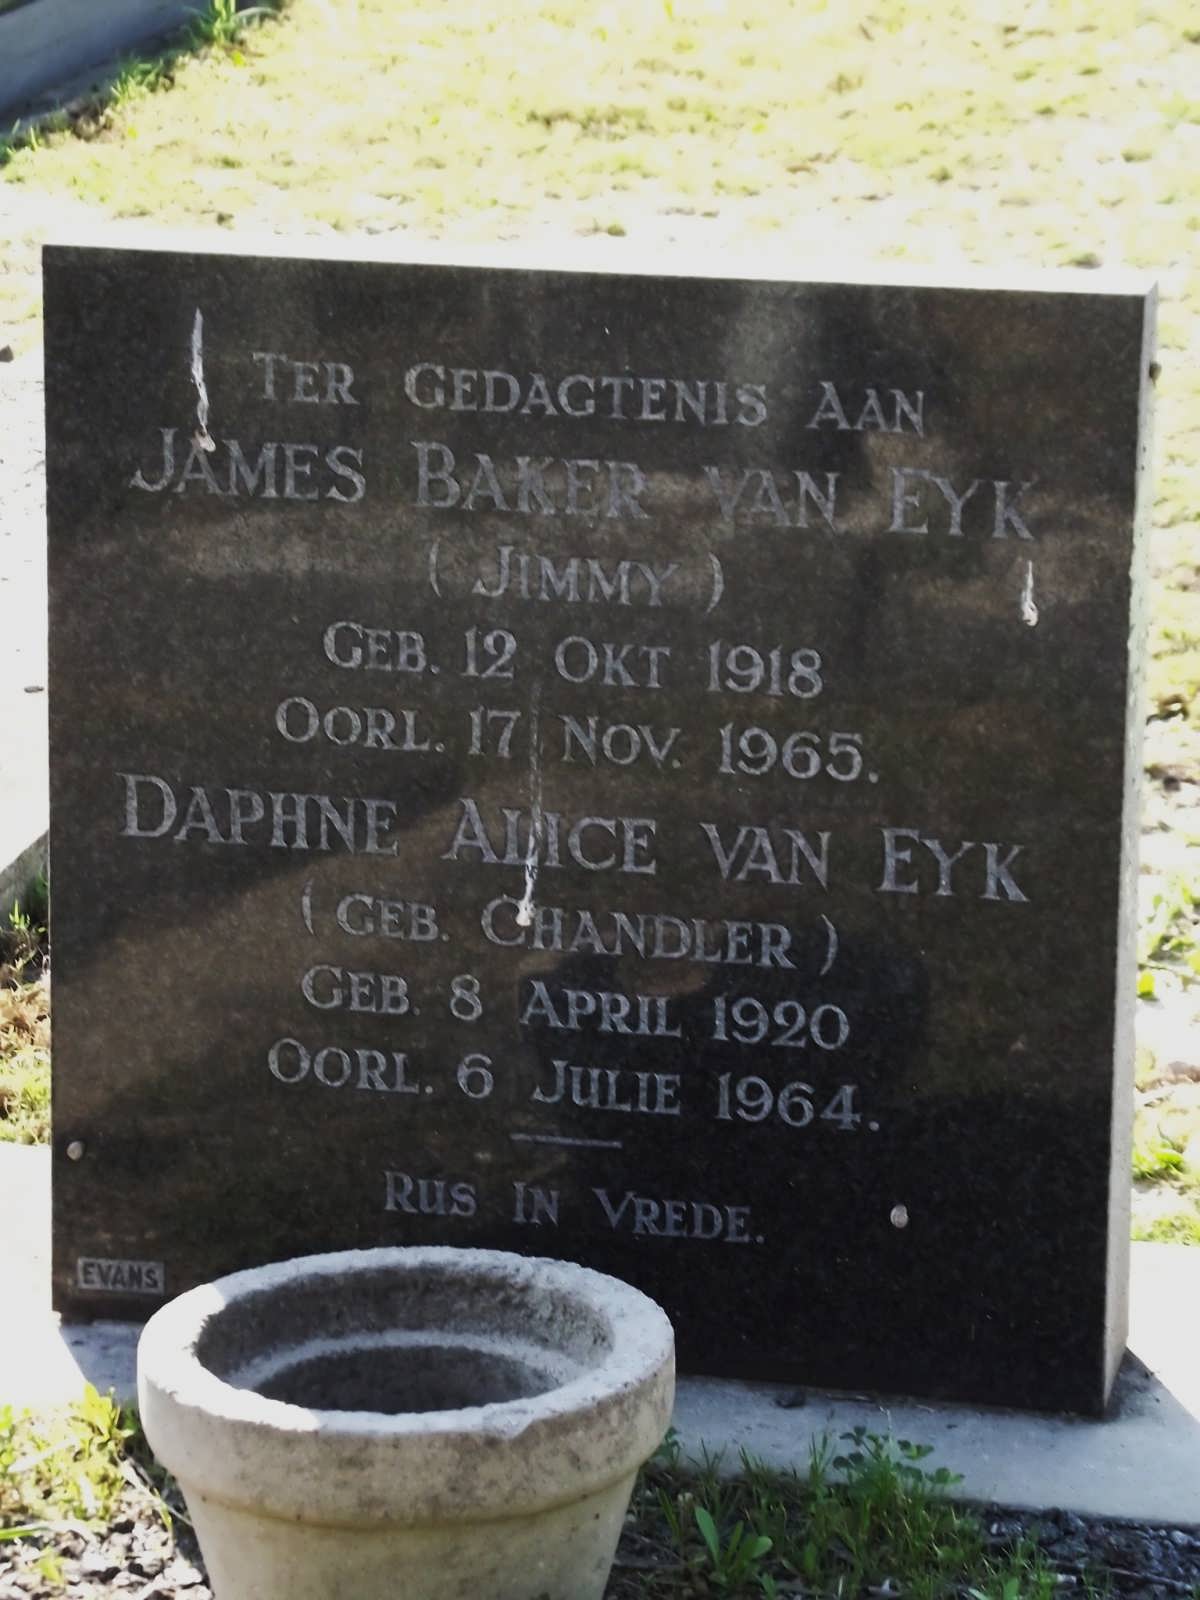 EYK James Baker, van 1918-1965 & Daphne Alice CHANDLER 1920-1964